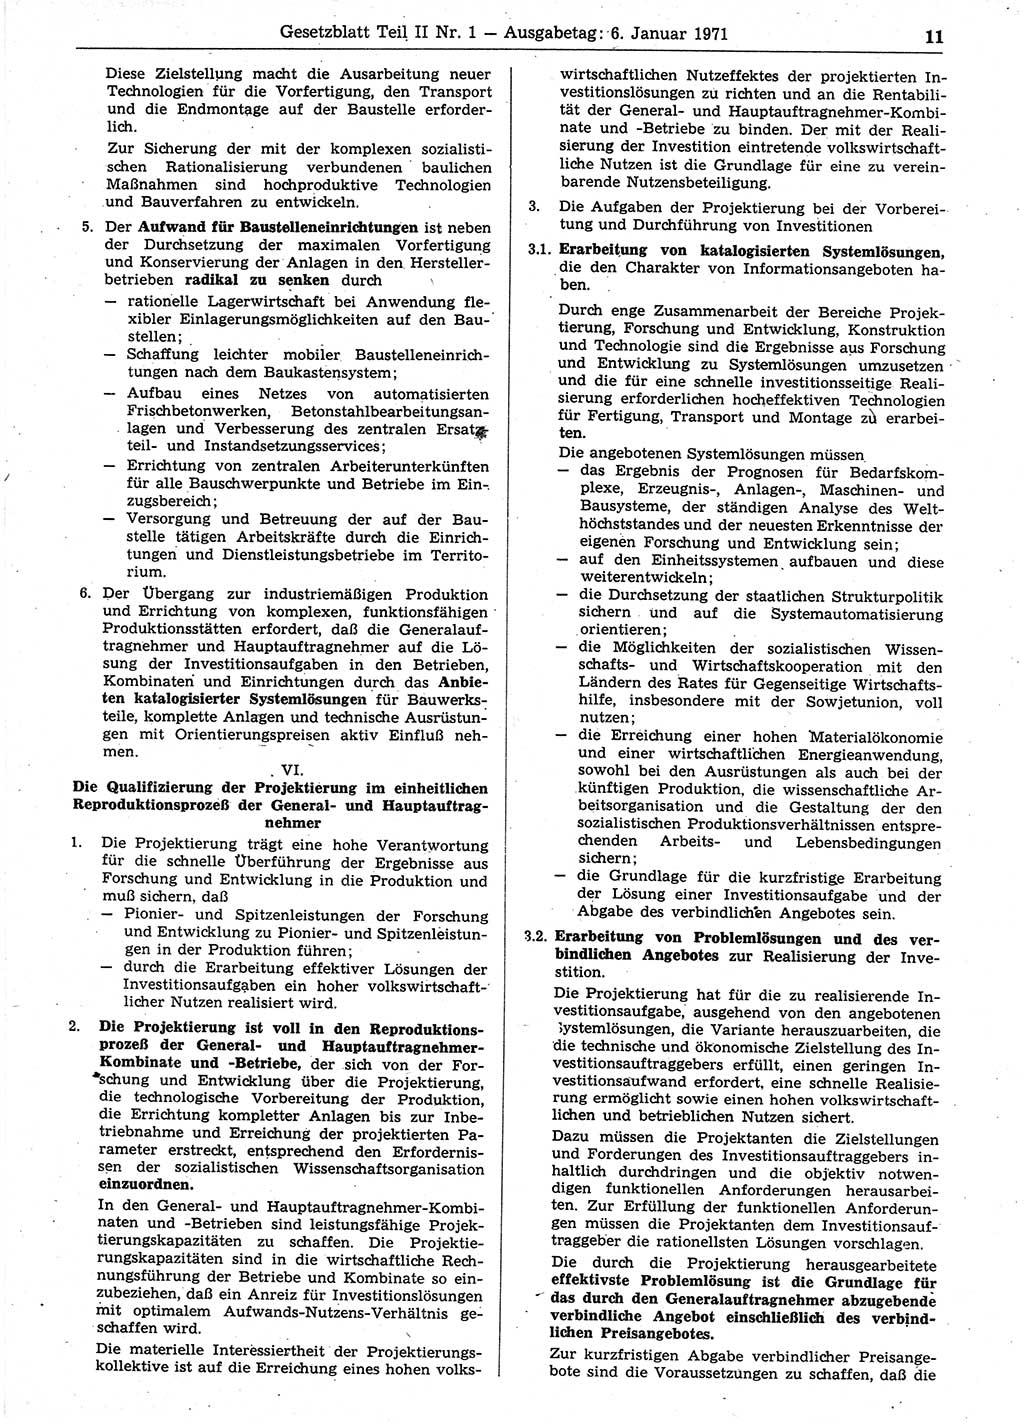 Gesetzblatt (GBl.) der Deutschen Demokratischen Republik (DDR) Teil ⅠⅠ 1971, Seite 11 (GBl. DDR ⅠⅠ 1971, S. 11)